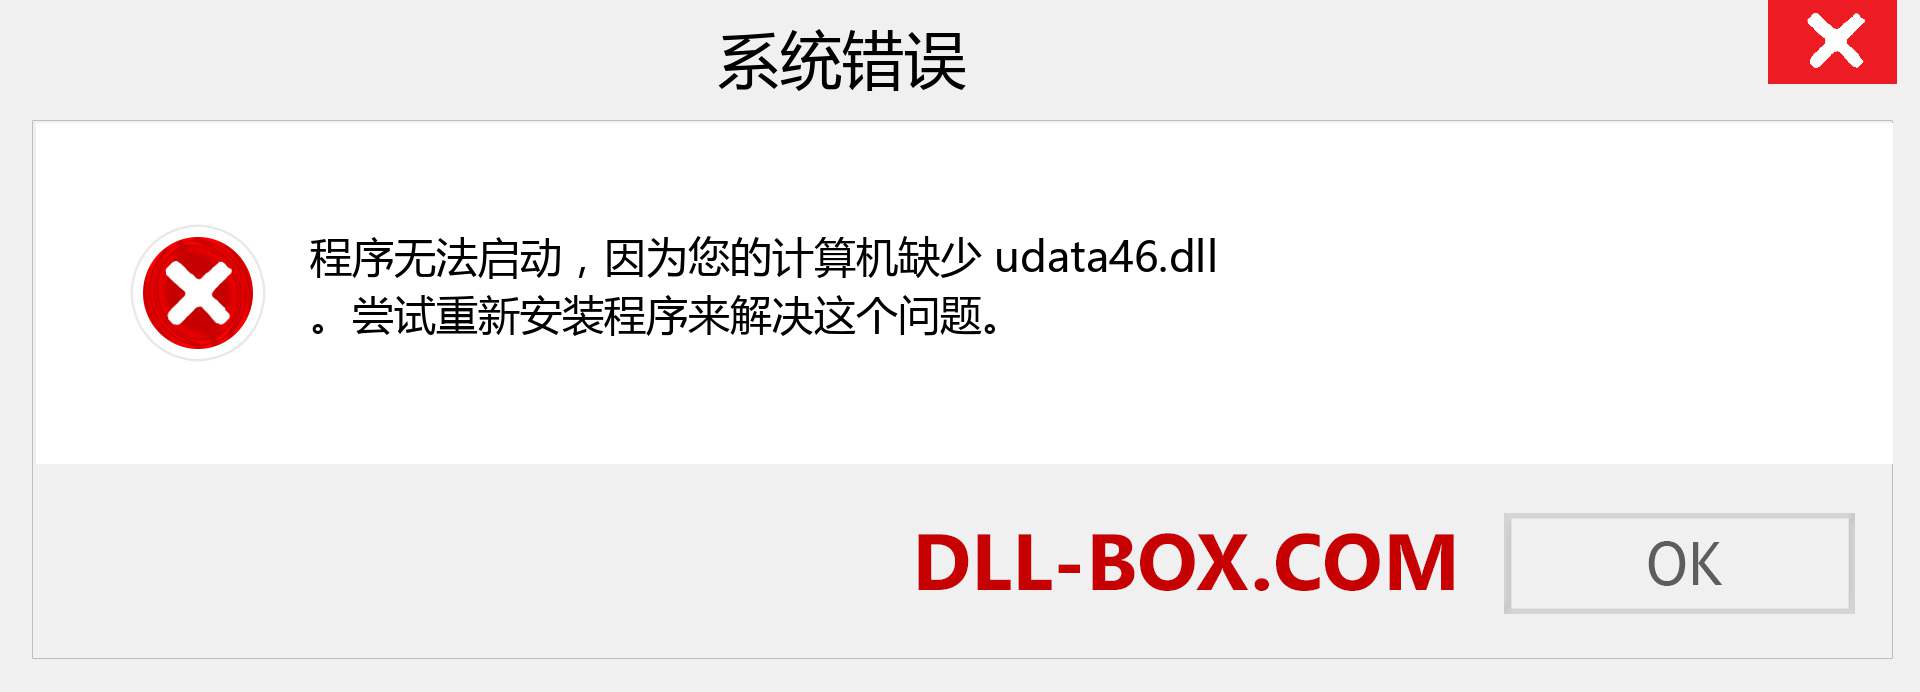 udata46.dll 文件丢失？。 适用于 Windows 7、8、10 的下载 - 修复 Windows、照片、图像上的 udata46 dll 丢失错误